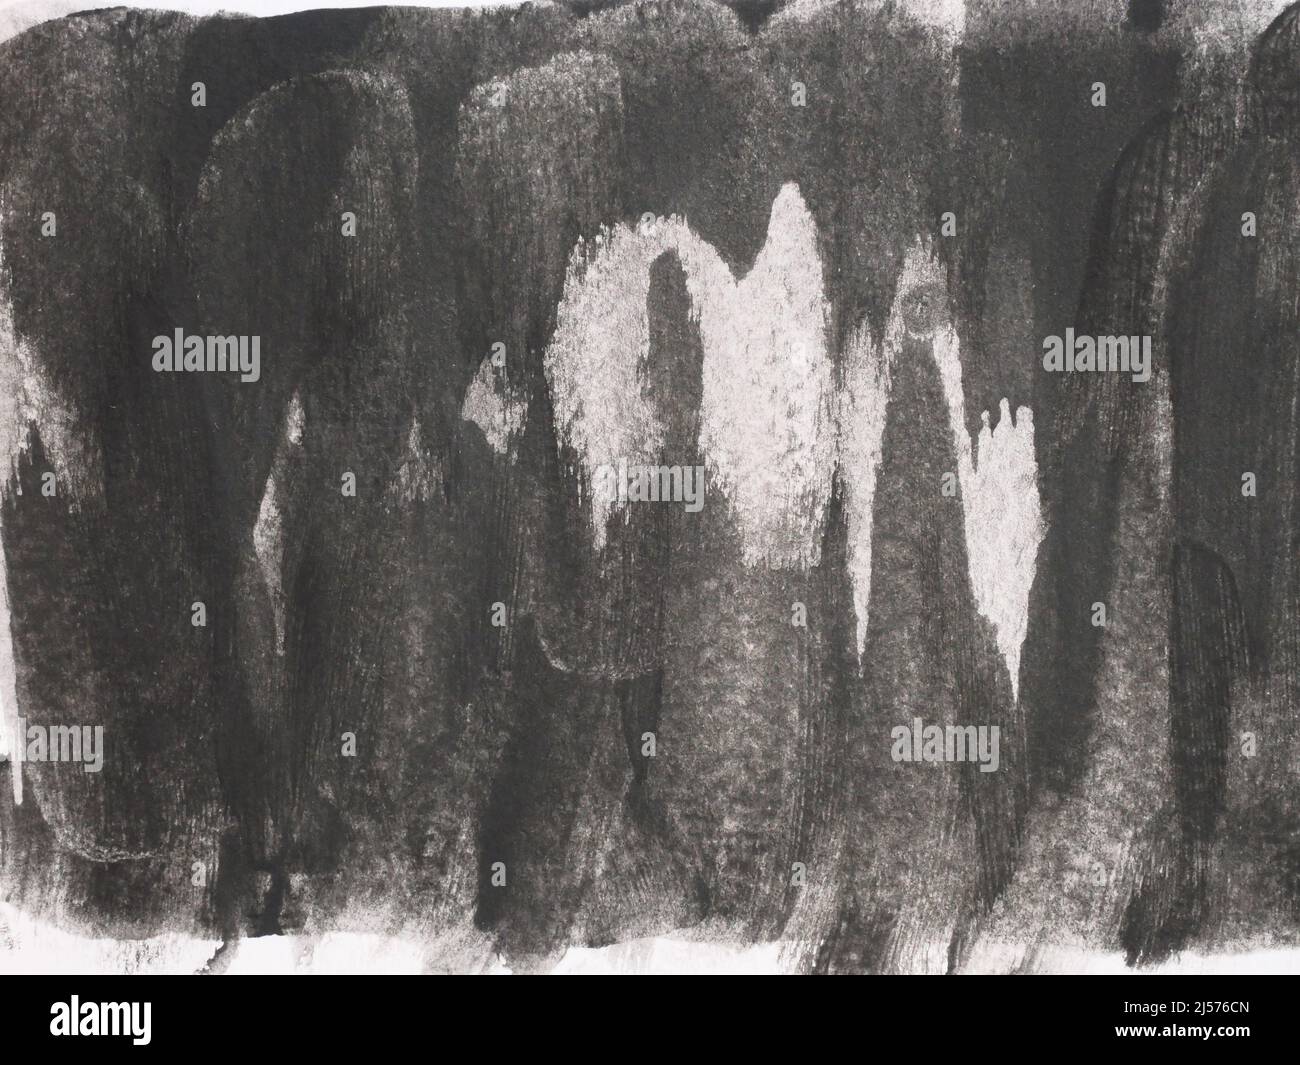 Colpo d'acquerello e spray su carta bianca , sfondo astratto disegnato a mano grigio e nero gocciolamento liquido Foto Stock